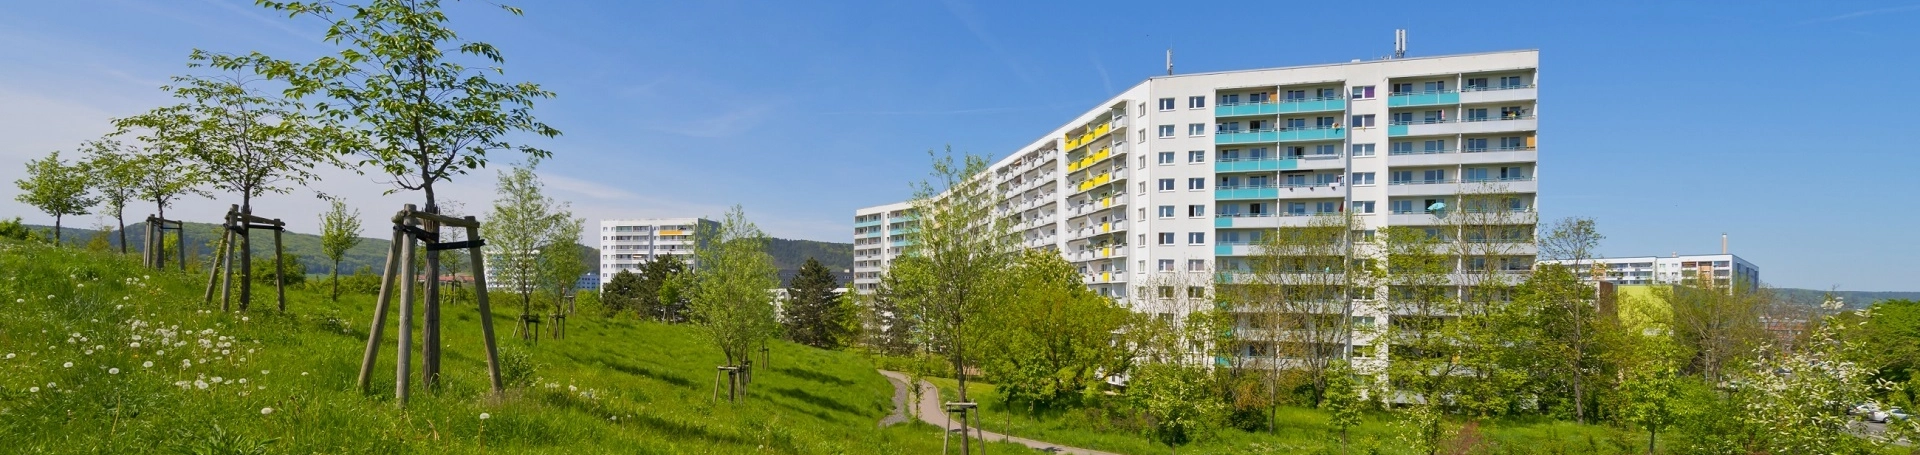 Vermietung von Wohnungen in Jena